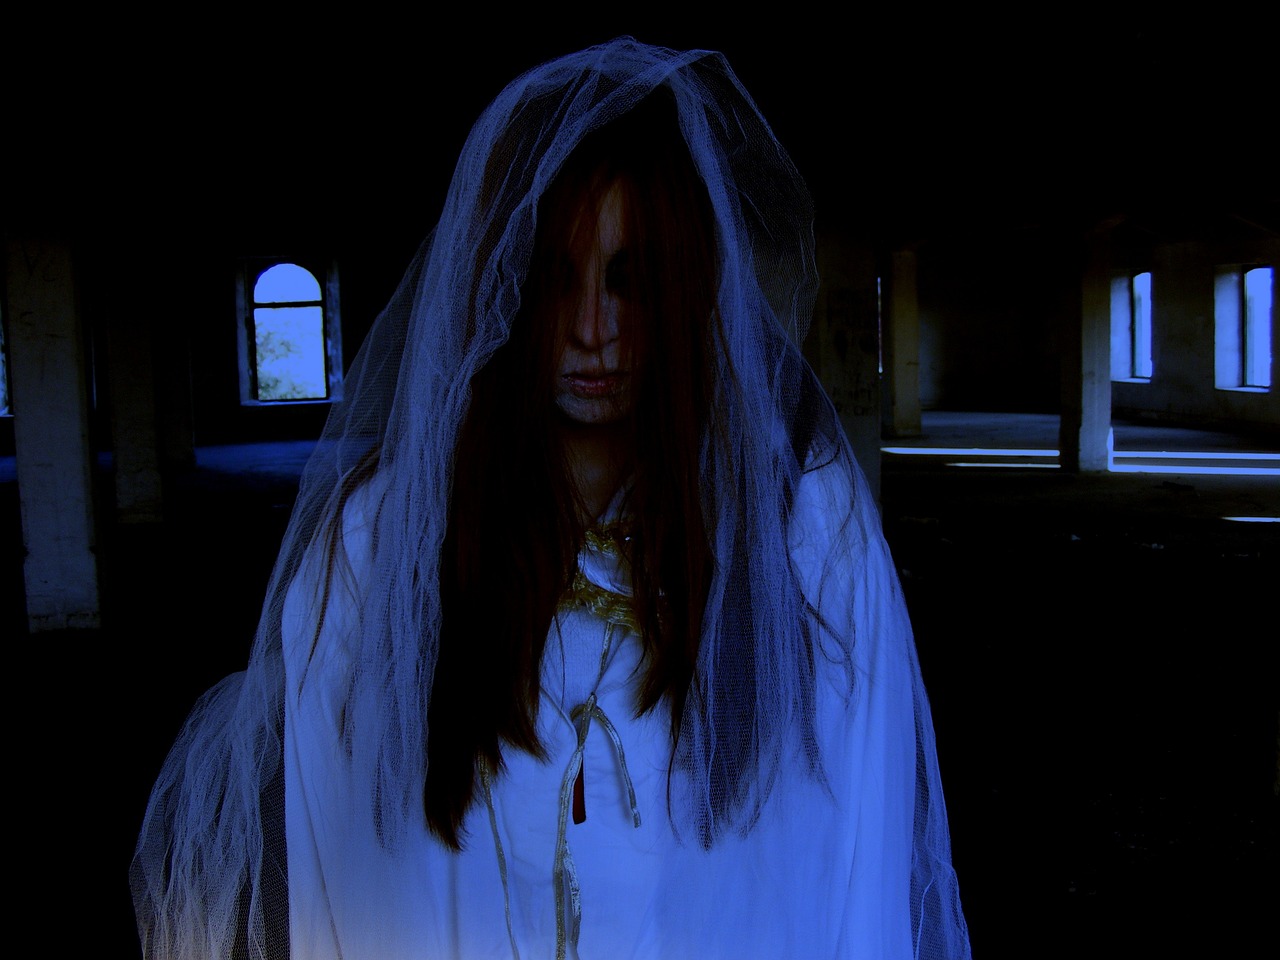 Sposa fantasma fotografata in un cantiere: l’immagine sconvolge il web